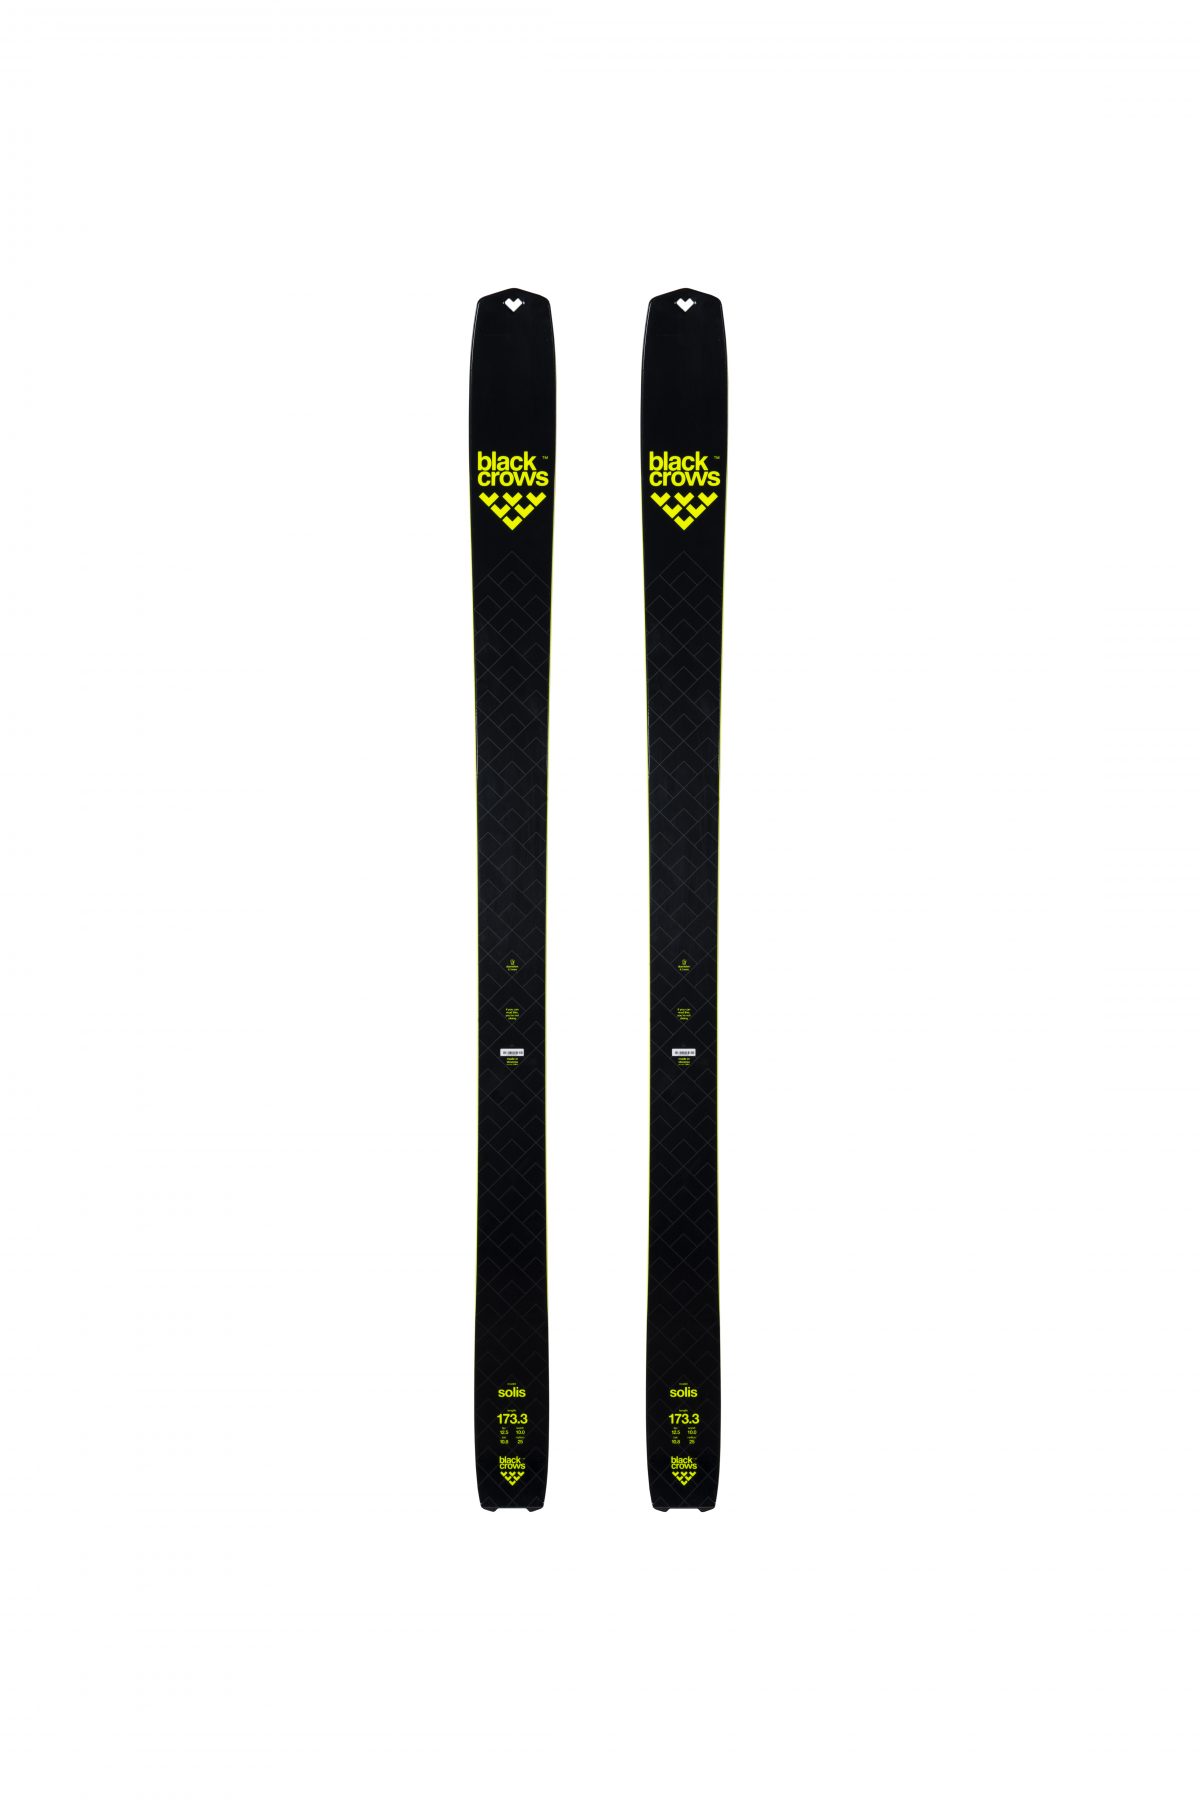 Solis - top of skis. Black Crows skis for the 2018/19 ski season.